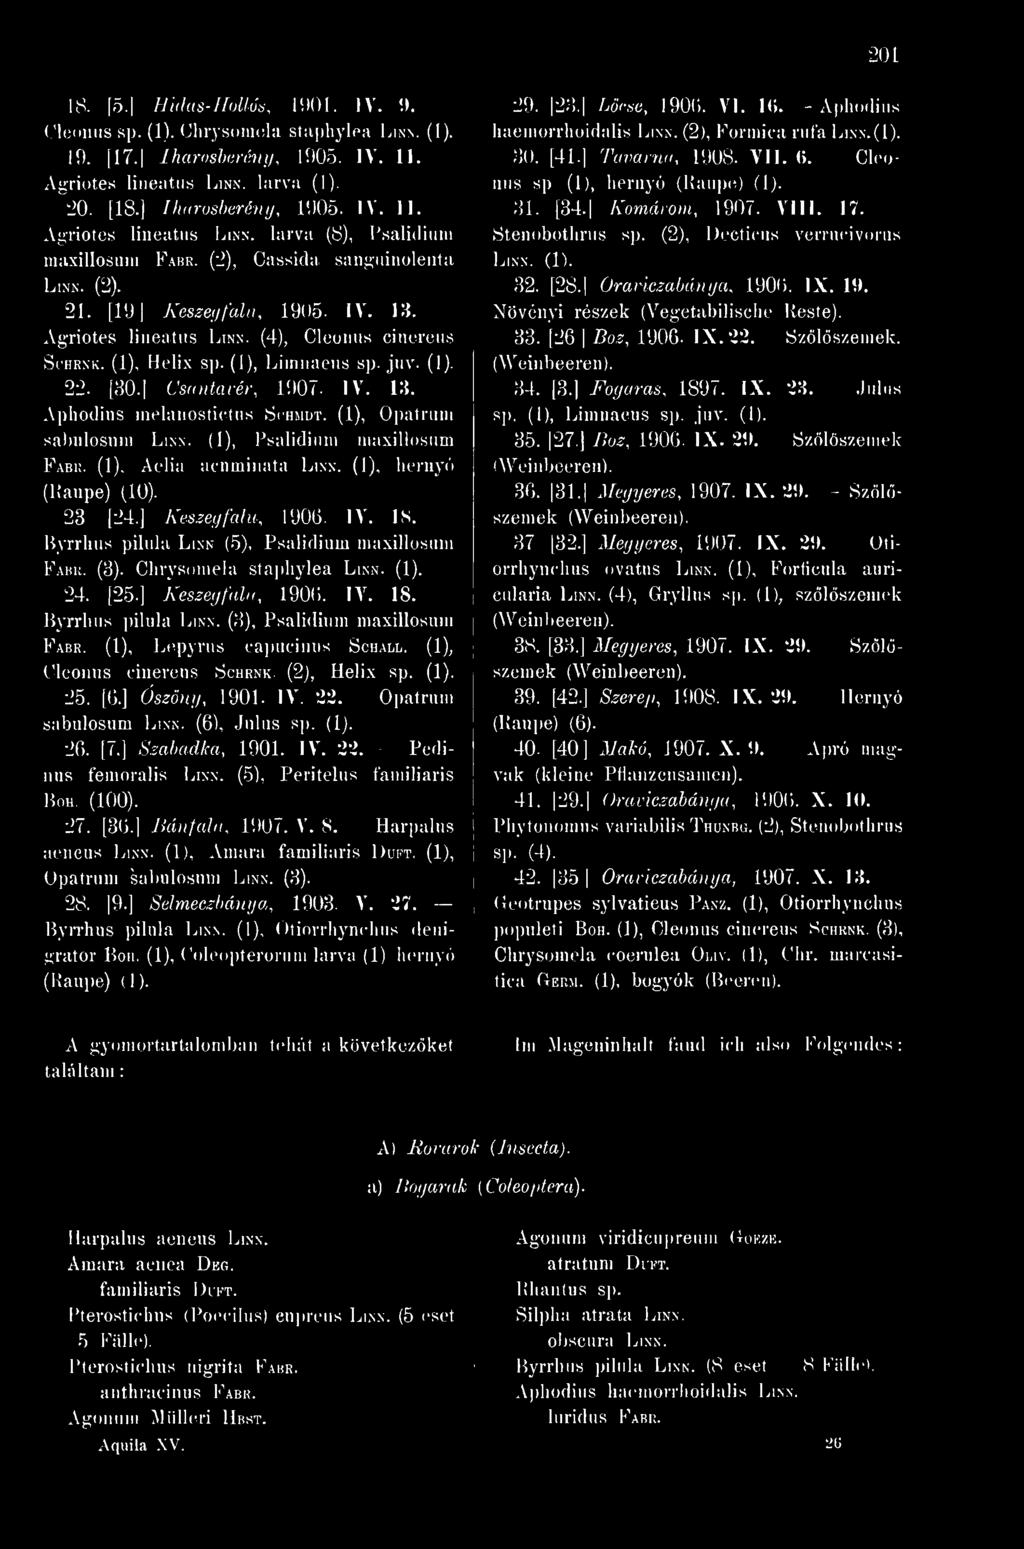 Byrrhus pilula Linn. (3), Psalidium maxillosum Fabr. (1), Lepyrus capucinus Sch.\ll. {[), Oleonus cinereus Schrnk (2), Helix (1). 25. [6.] Ószöny, 1901. IV. 22. - Opatrum sabulosum Linn.